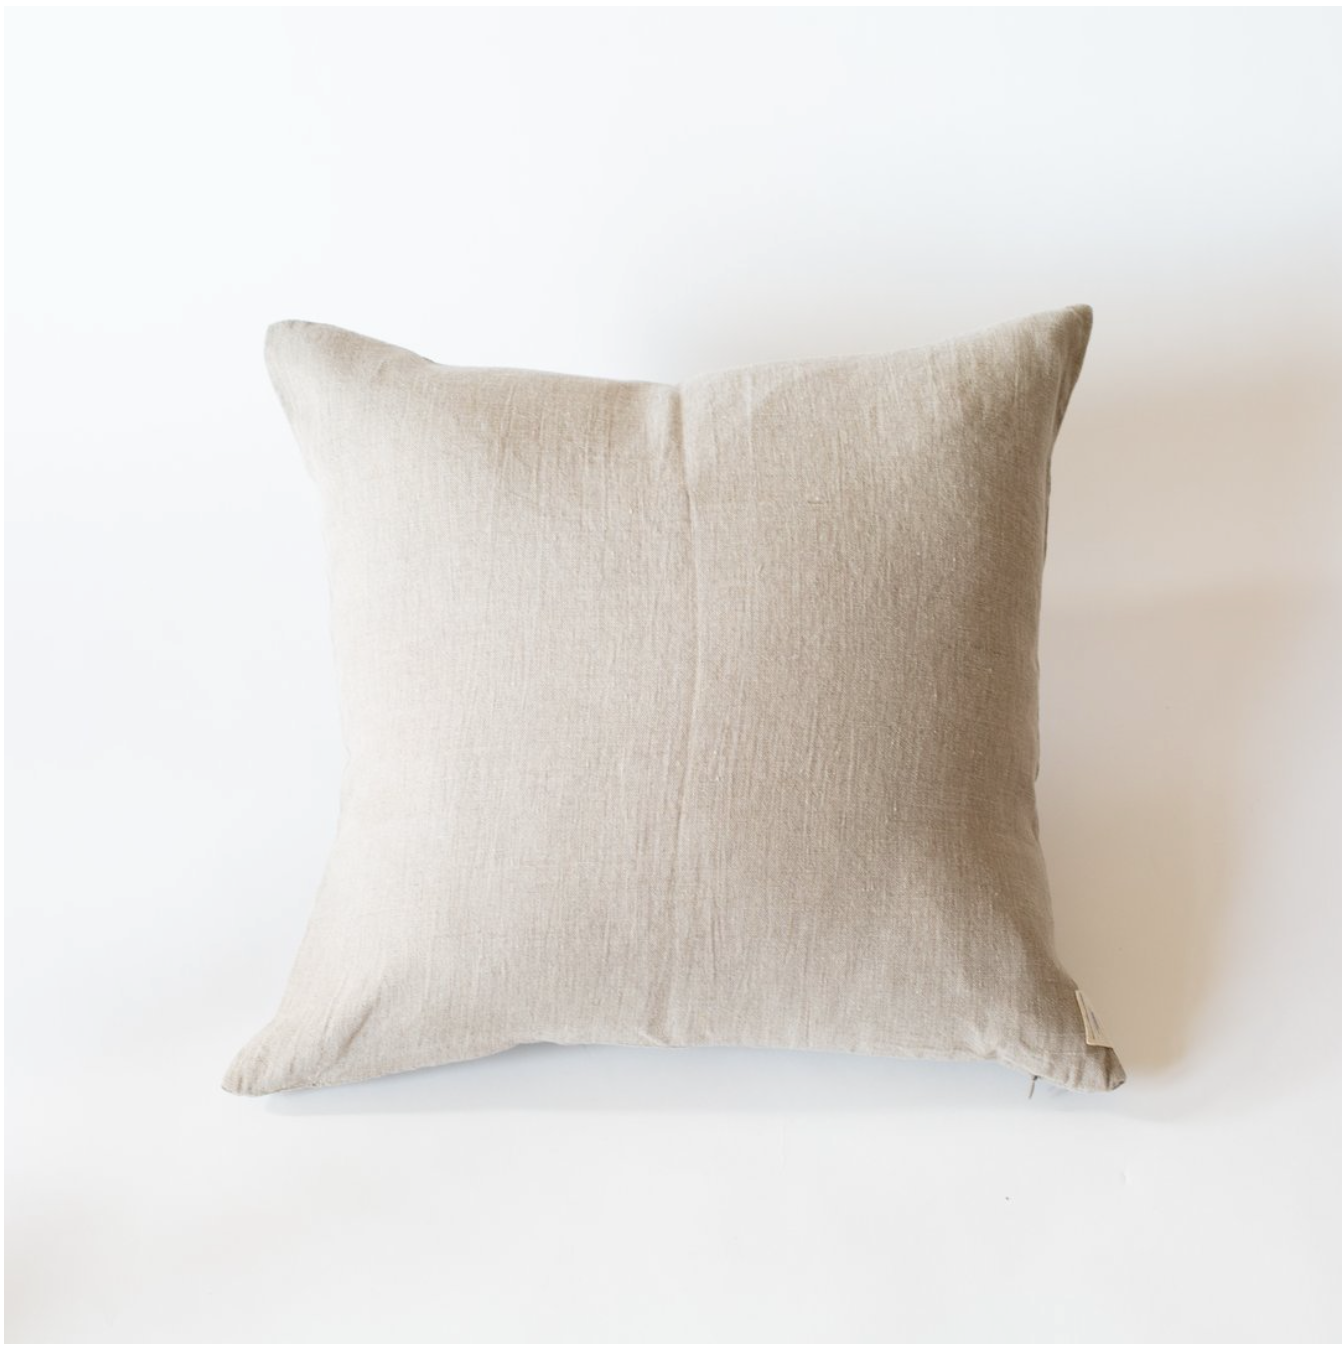 Natural 20x20 Linen Pillow